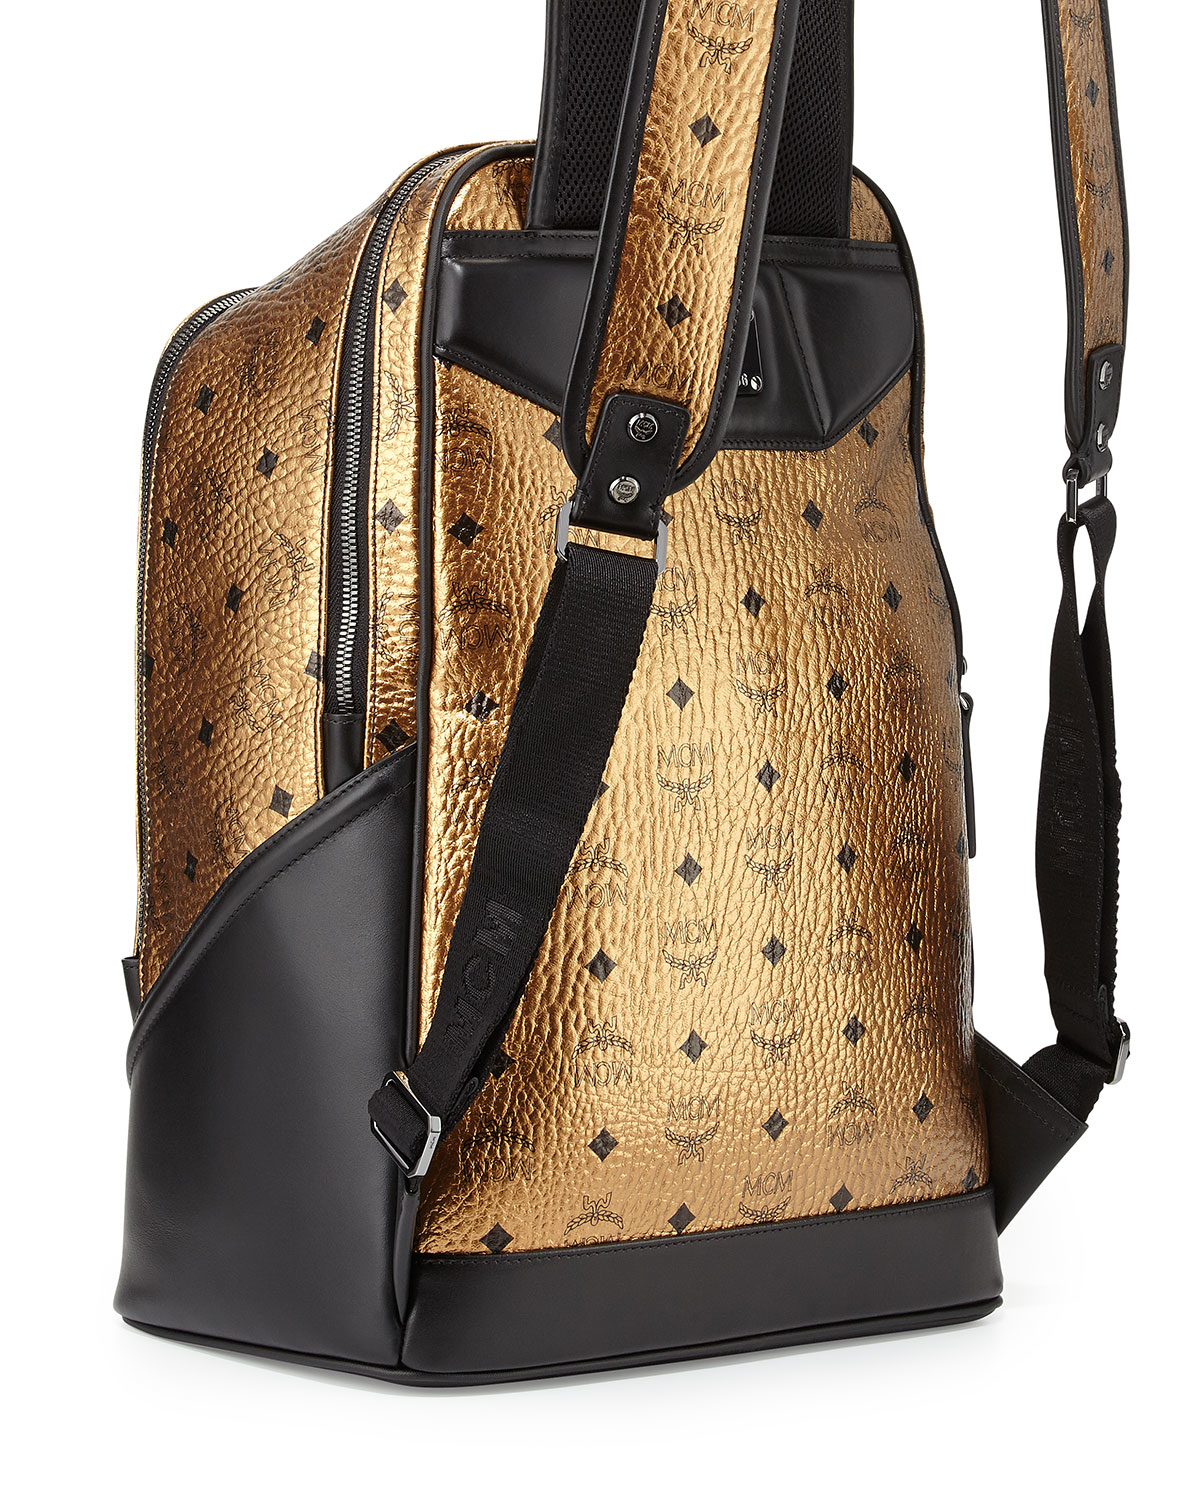 Mcm Duke Visetos Backpack in Metallic for Men | Lyst